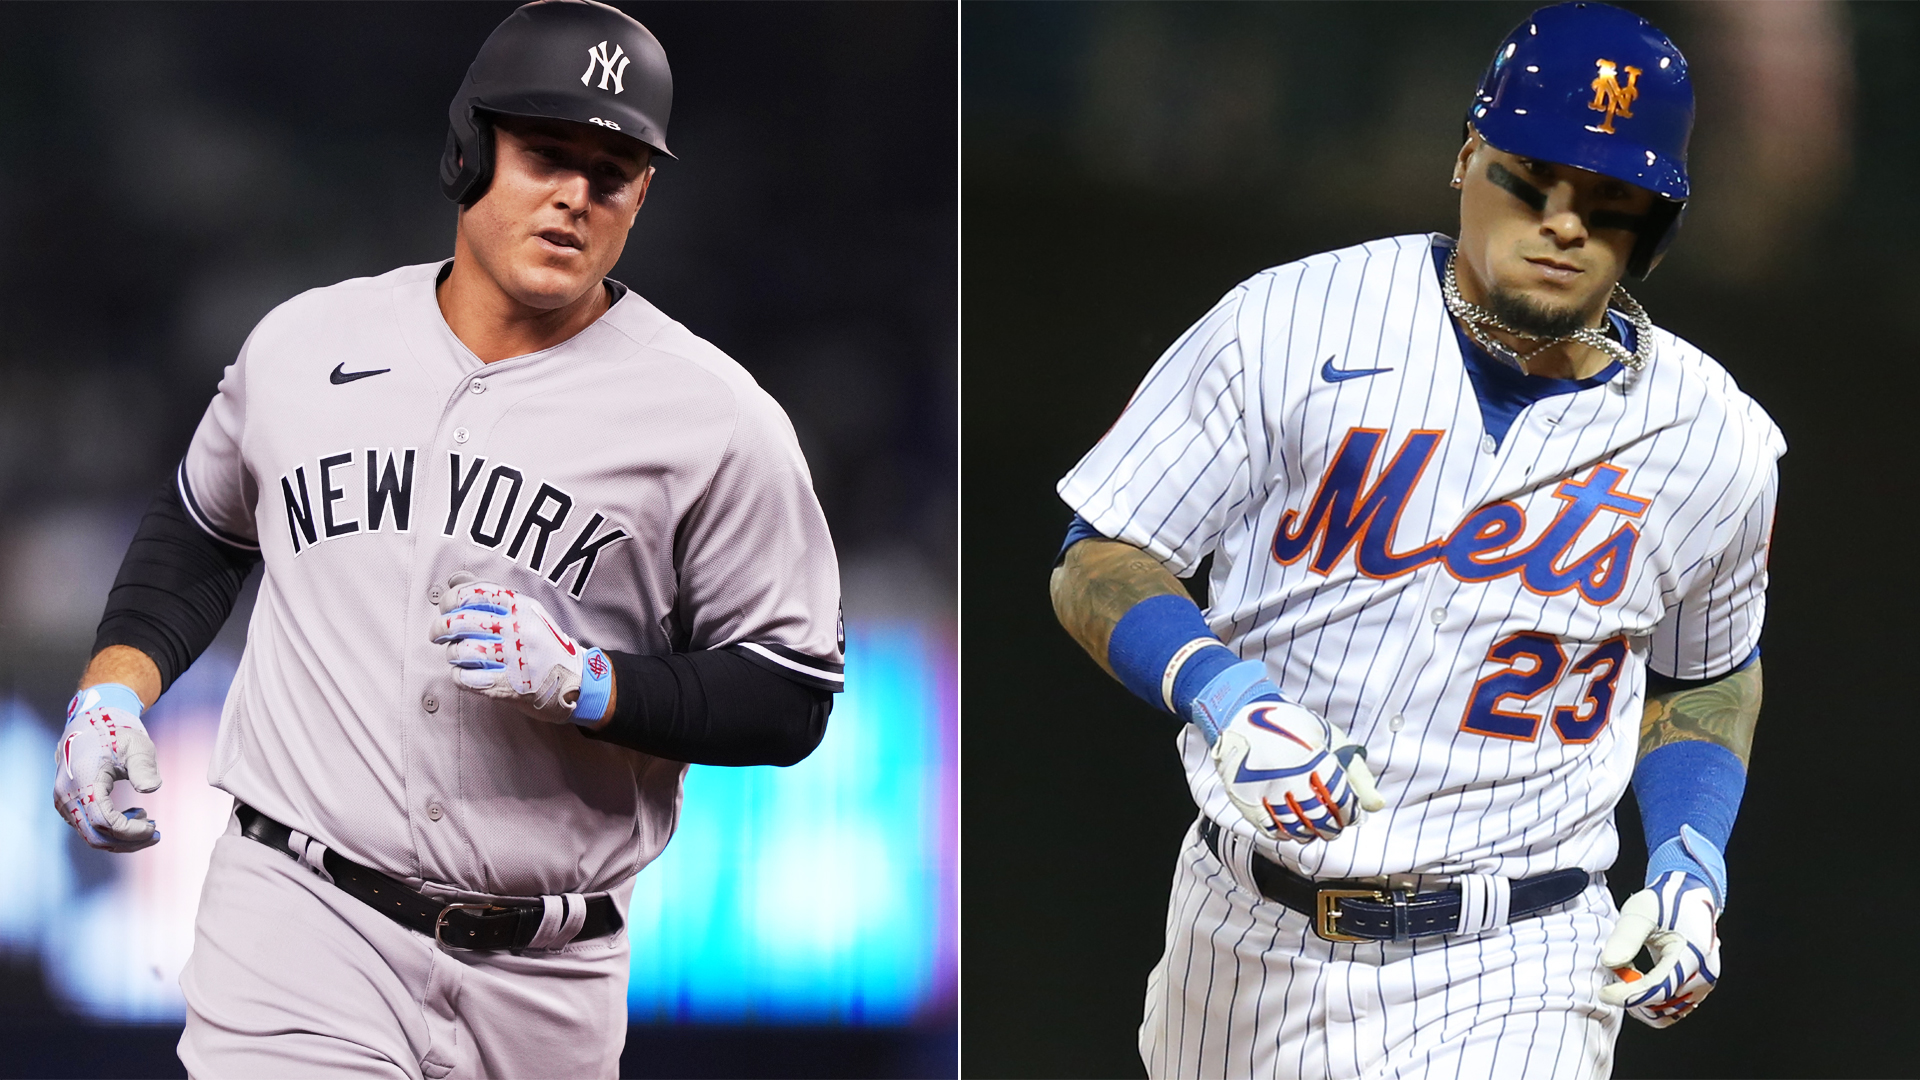 Giants' Kris Bryant helps Yankees' Anthony Rizzo, Mets' Javier